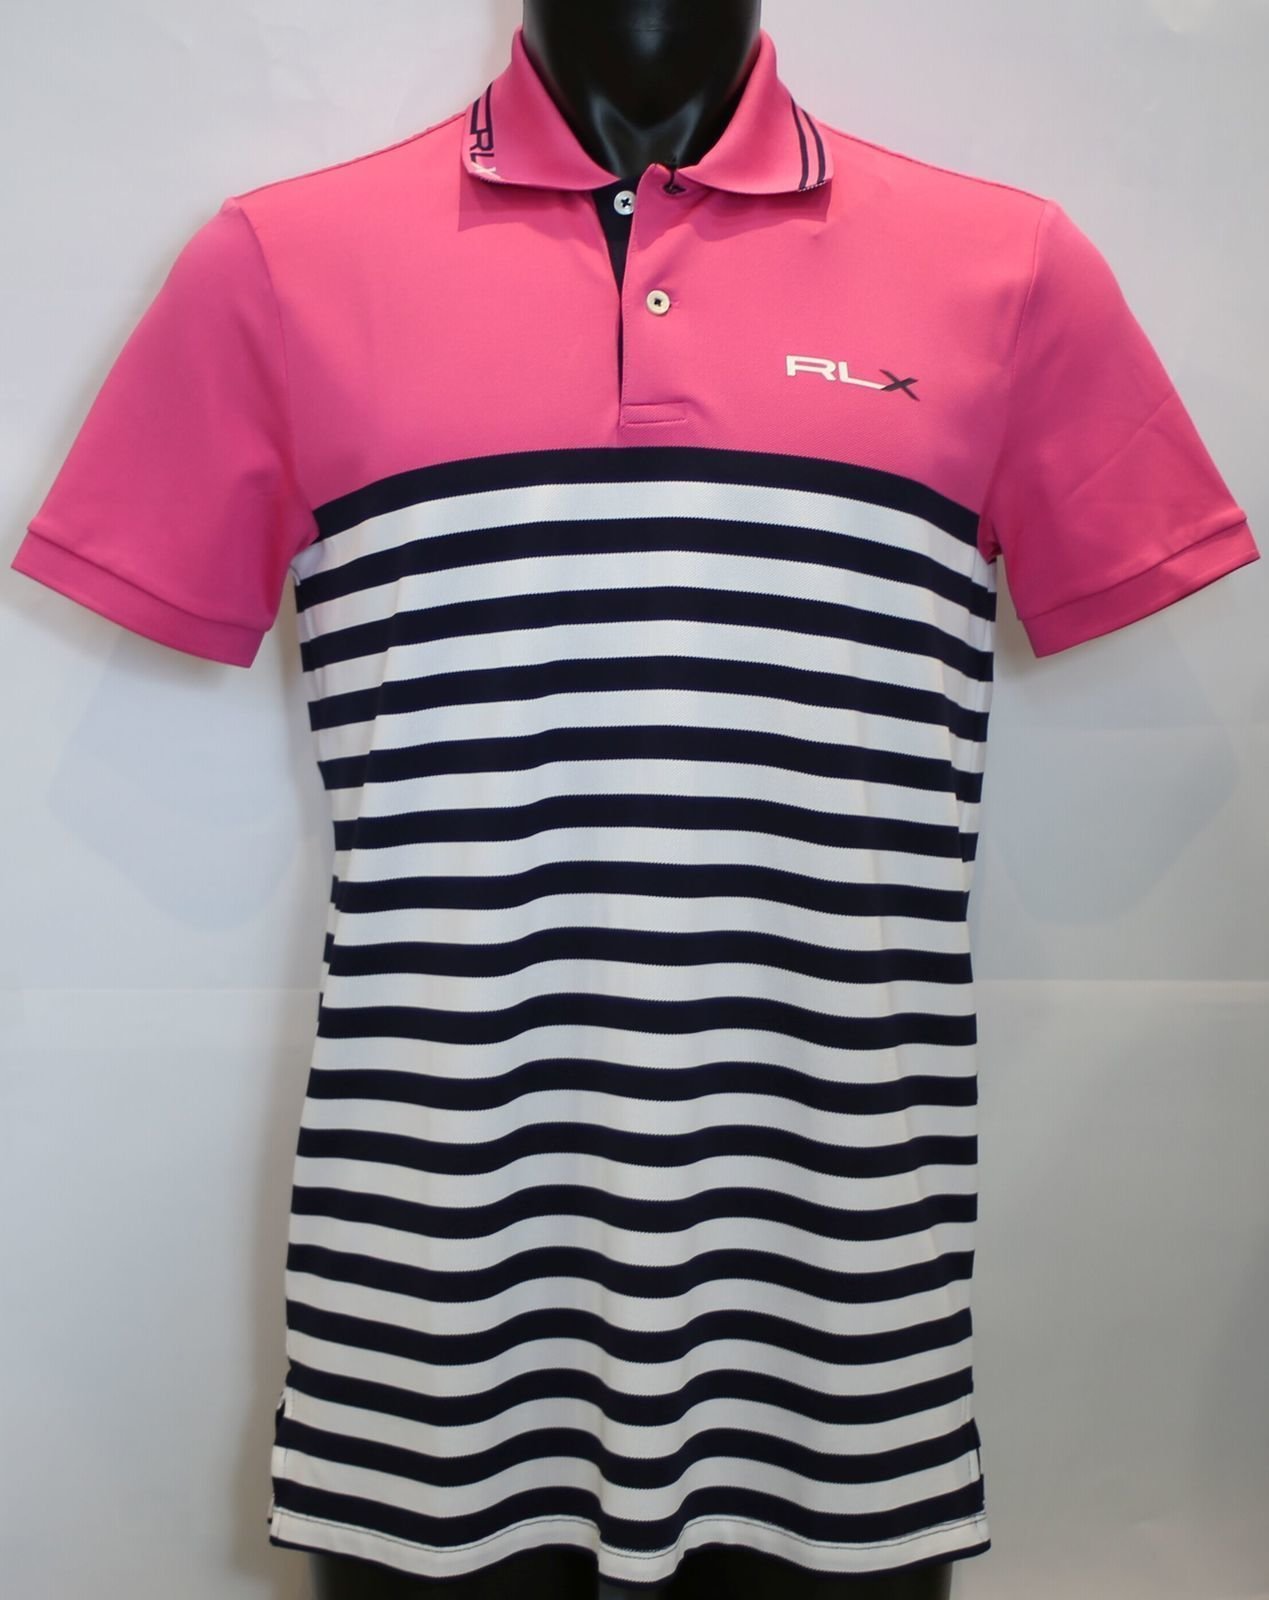 Polo košile Ralph Lauren Light Weight Tech Pique Pink/Navy M